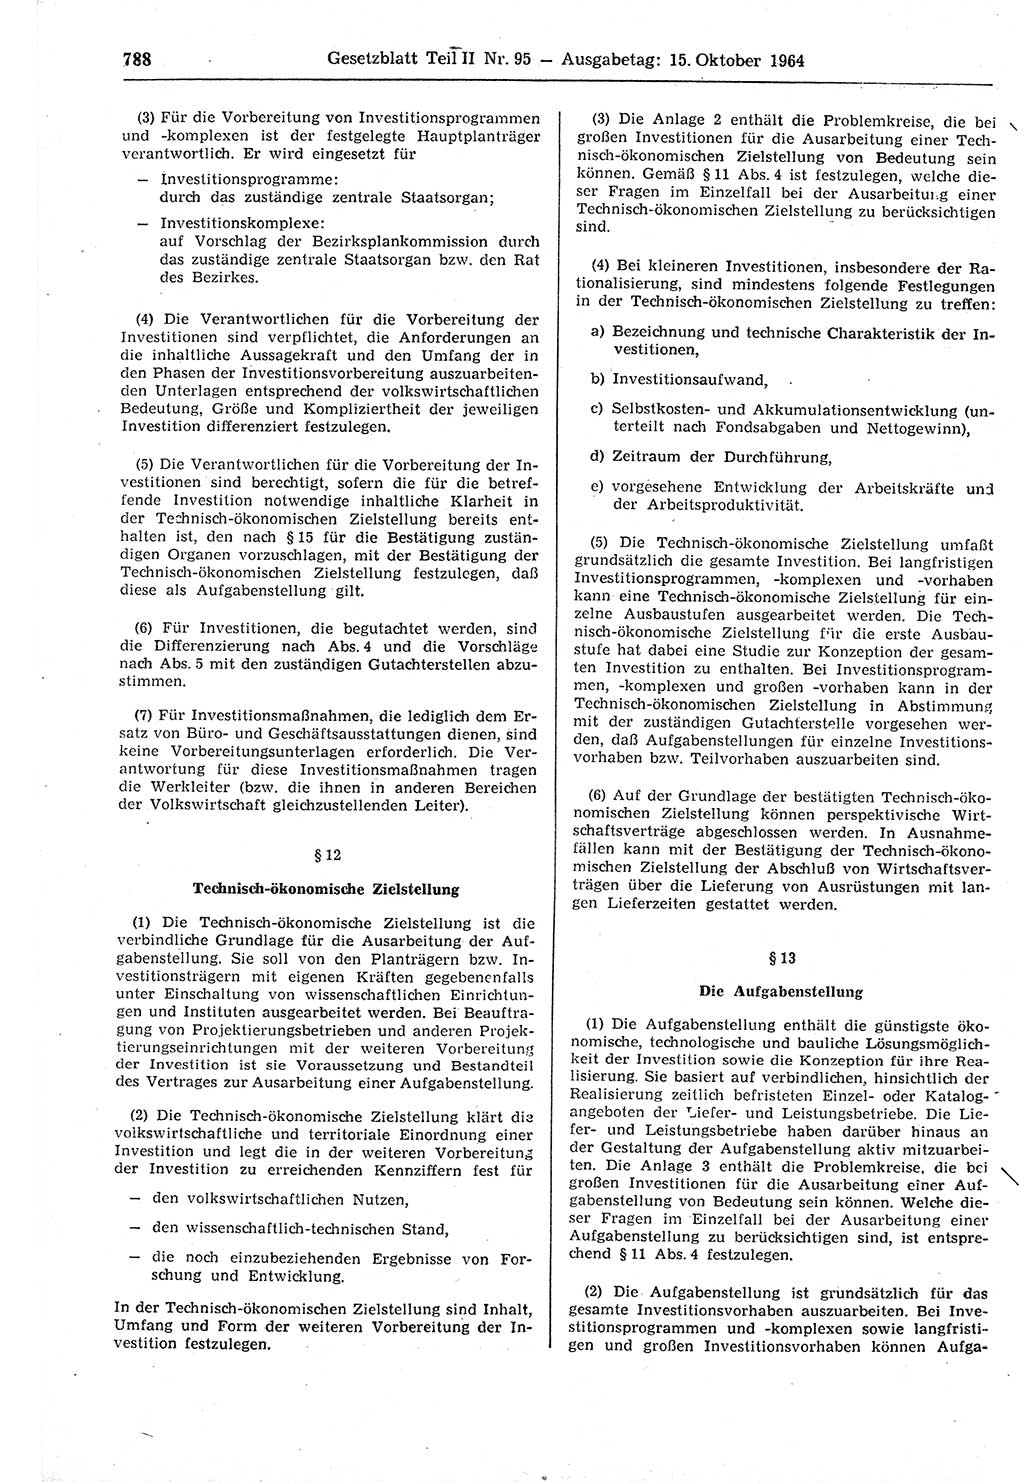 Gesetzblatt (GBl.) der Deutschen Demokratischen Republik (DDR) Teil ⅠⅠ 1964, Seite 788 (GBl. DDR ⅠⅠ 1964, S. 788)